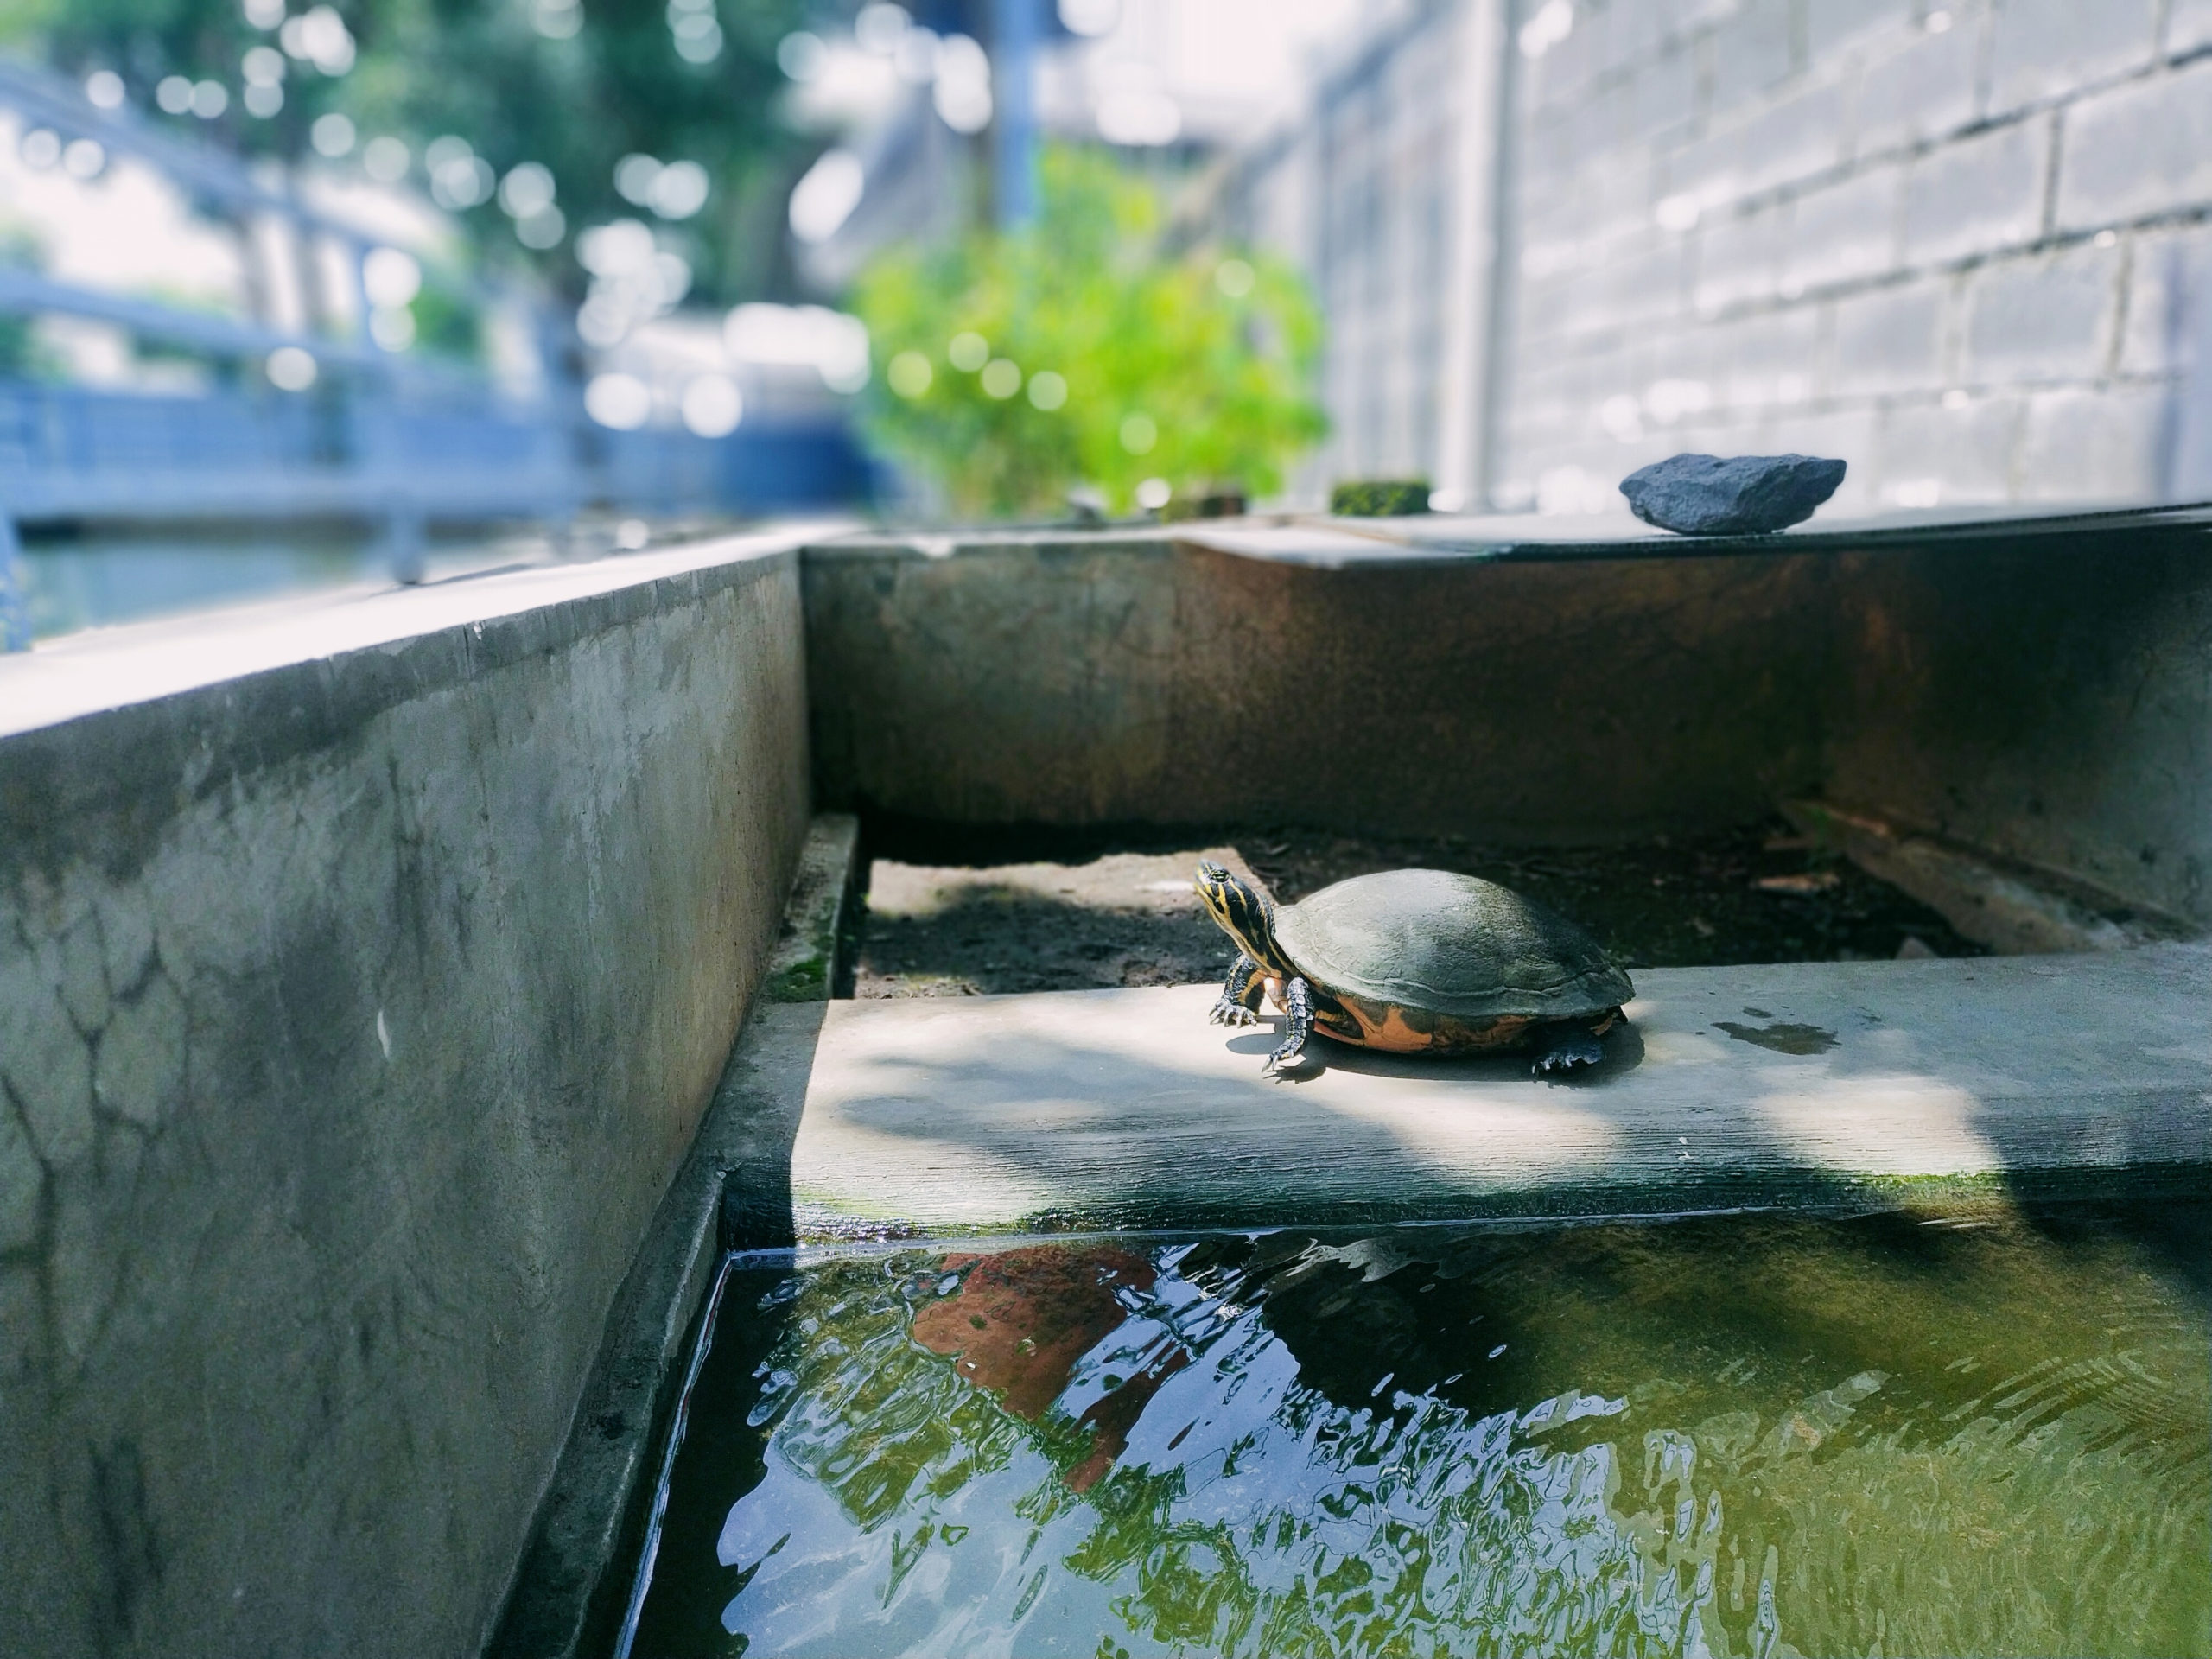 turtle basks outside